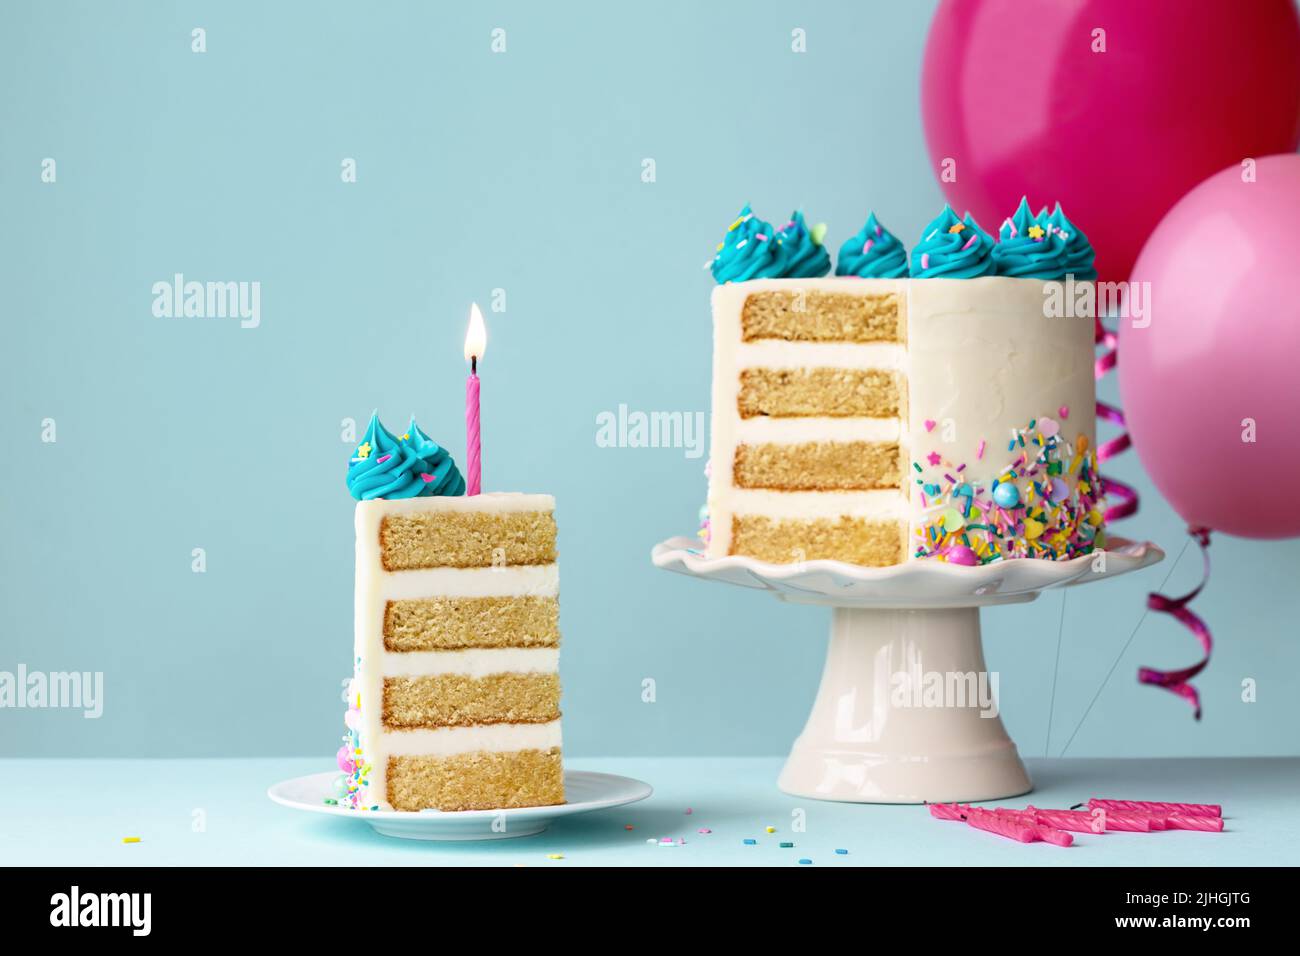 Geburtstagskuchen mit Schichten und türkisfarbenem Zuckerguss, in Scheiben geschnitten und einer rosa Geburtstagskerze Stockfoto